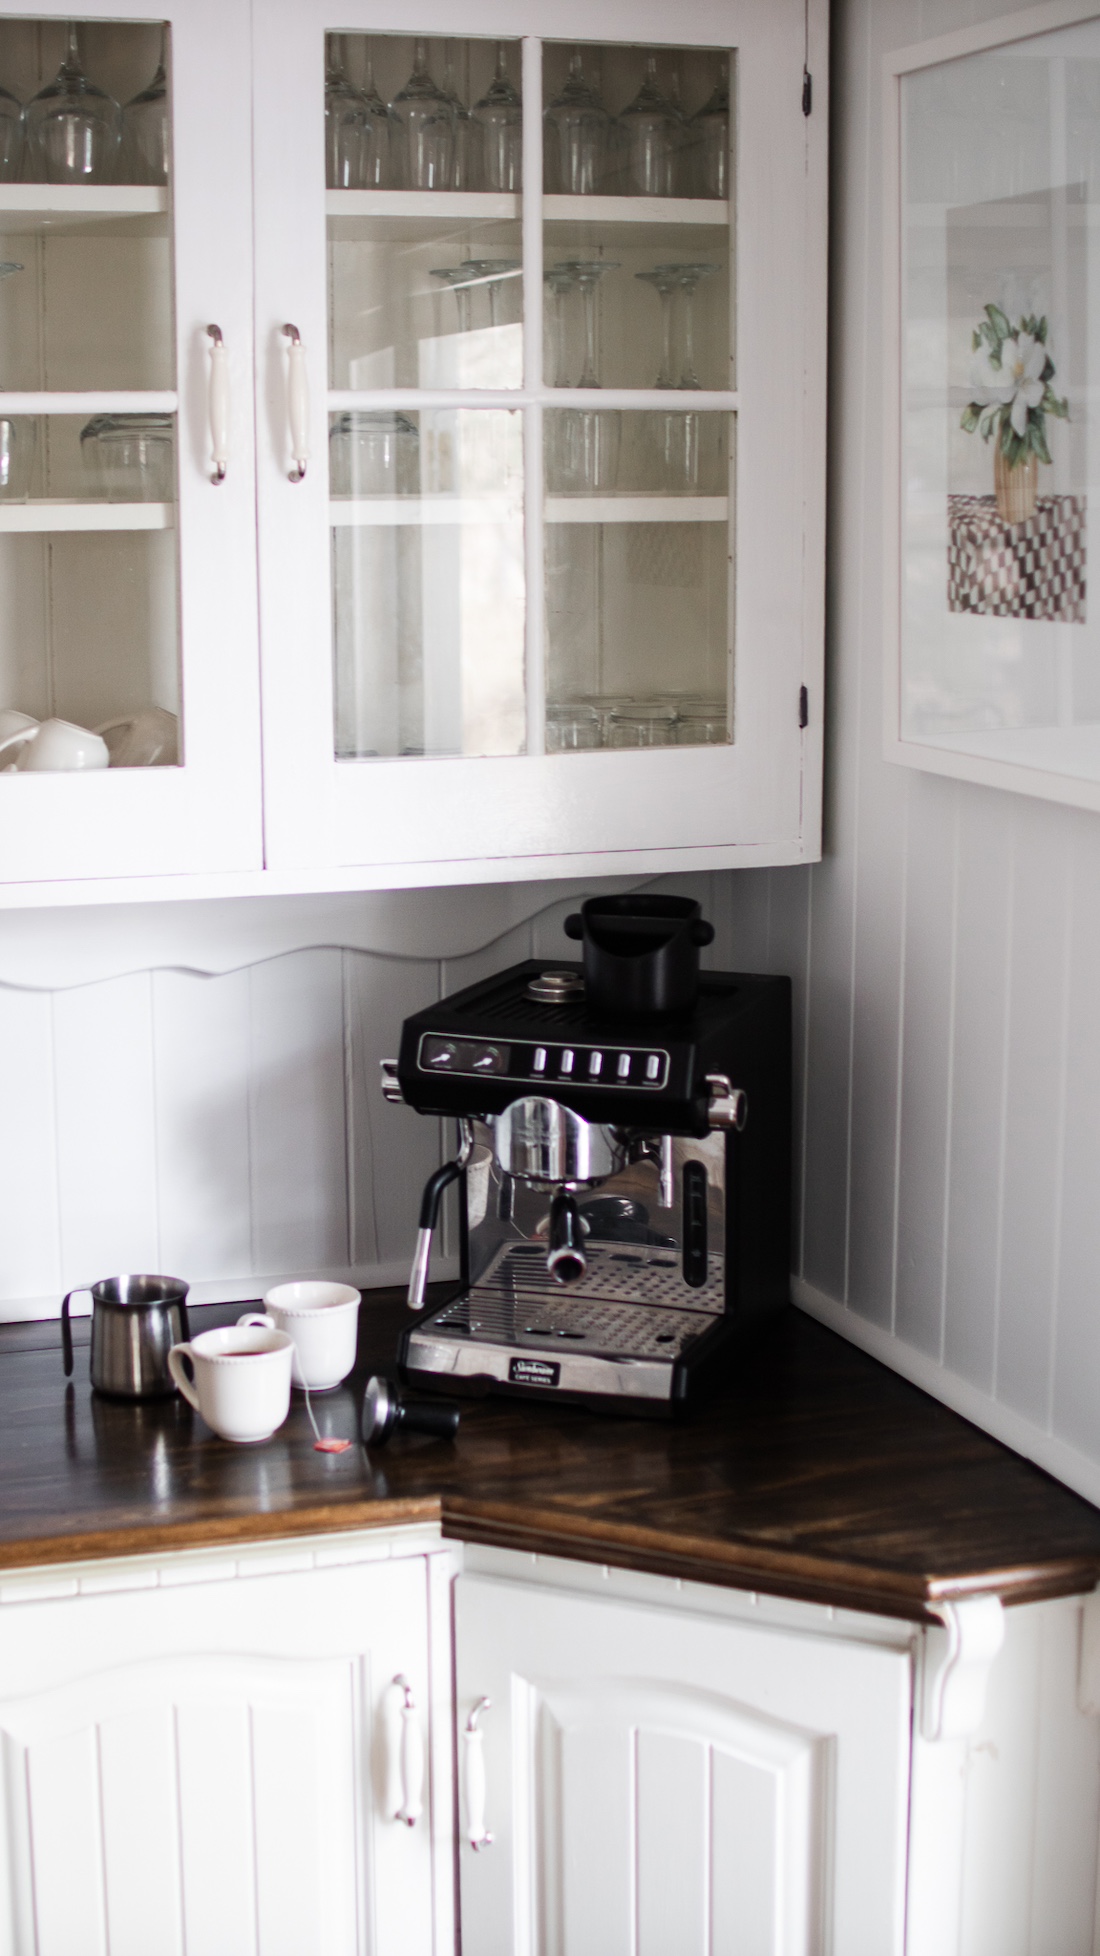 Summerholm House kitchen nook with coffee machine